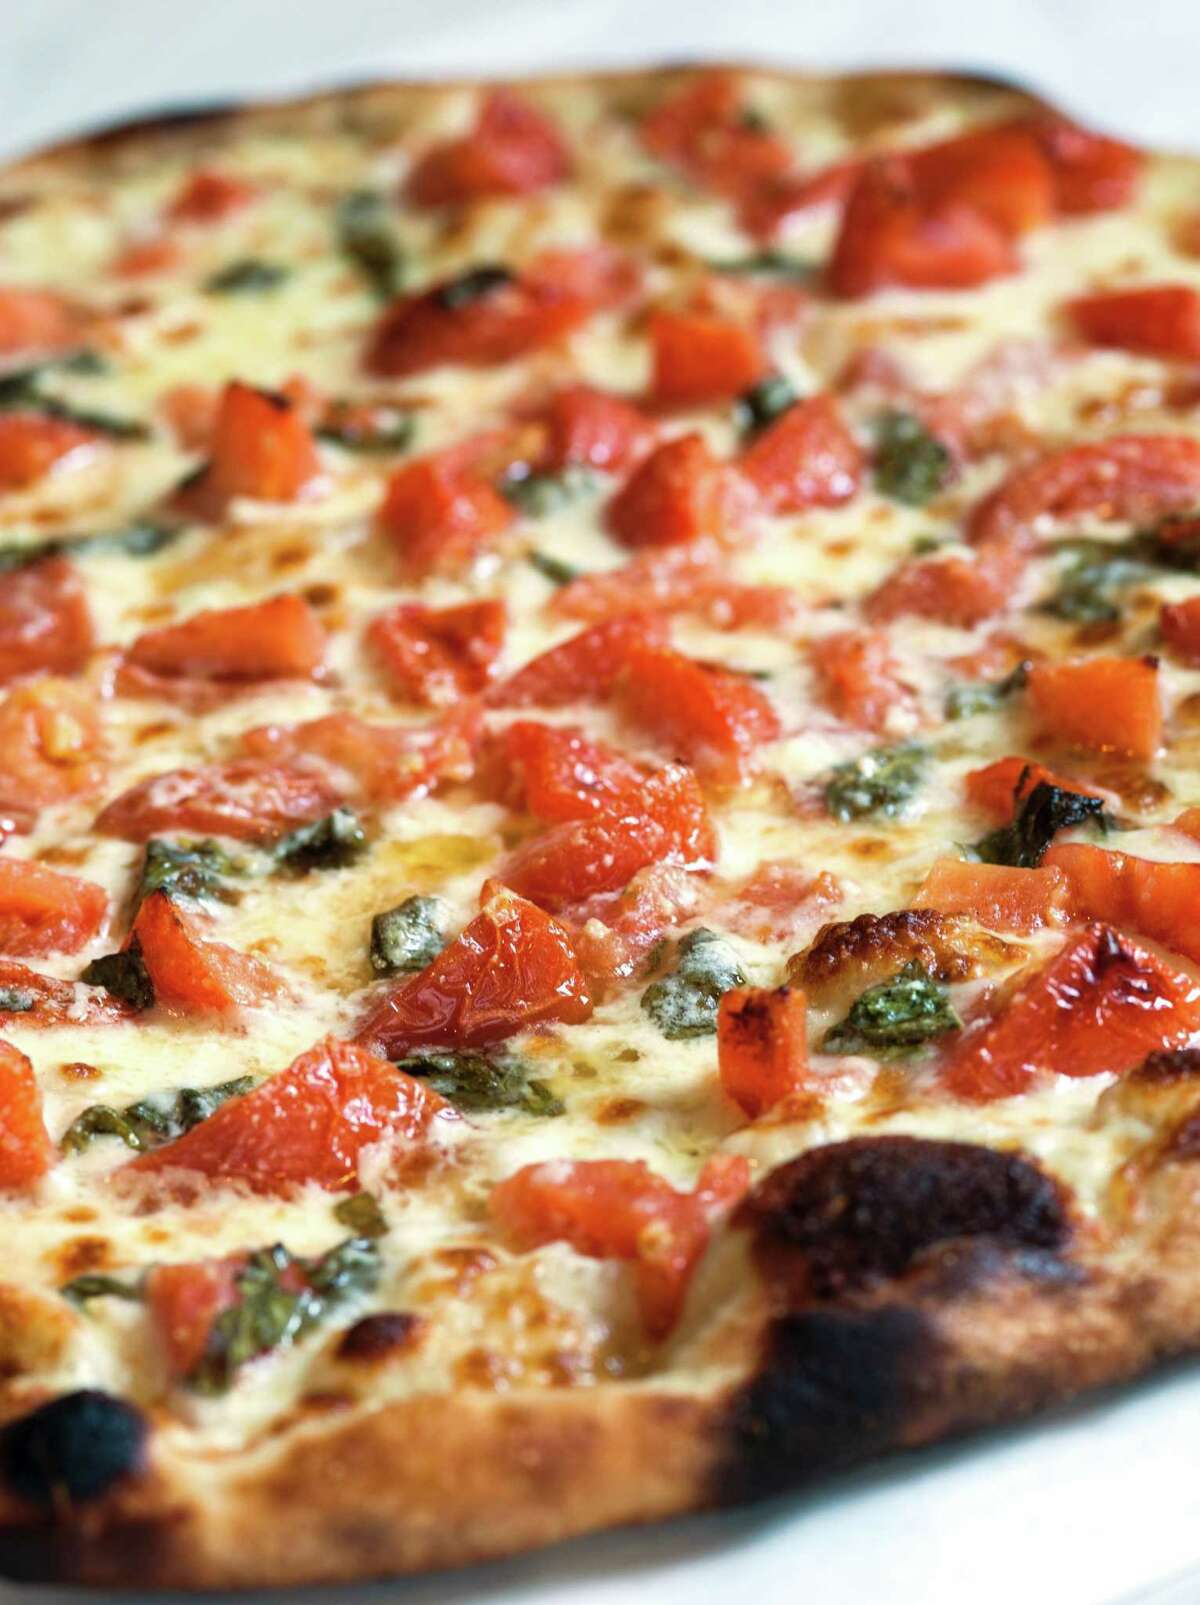 Frank Pepe's fresh tomato pizza returns for summer